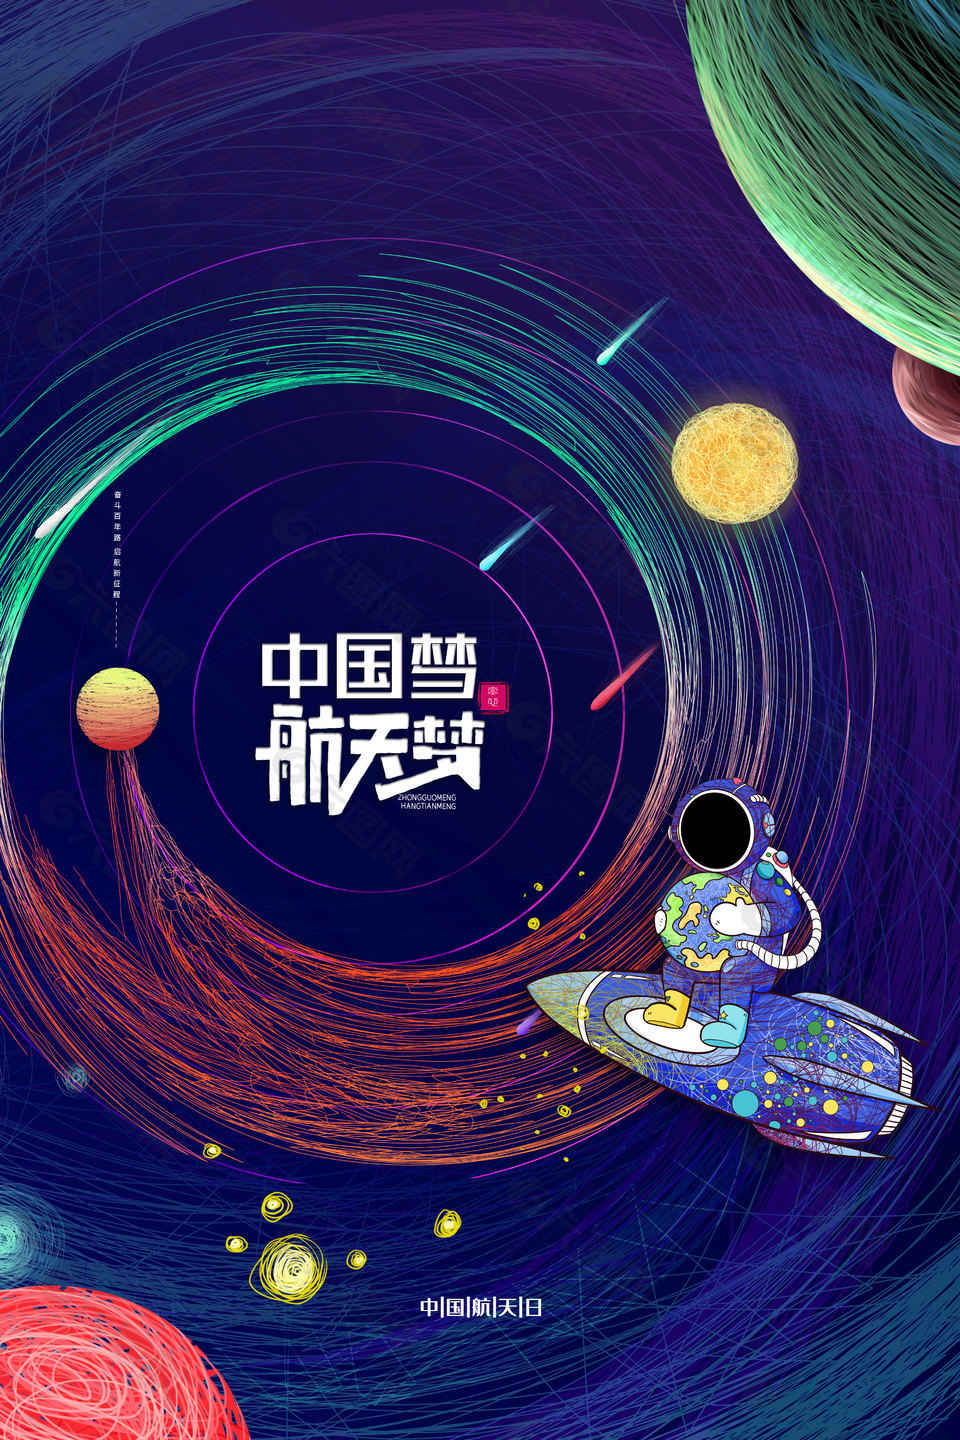 中国航天日教育模板